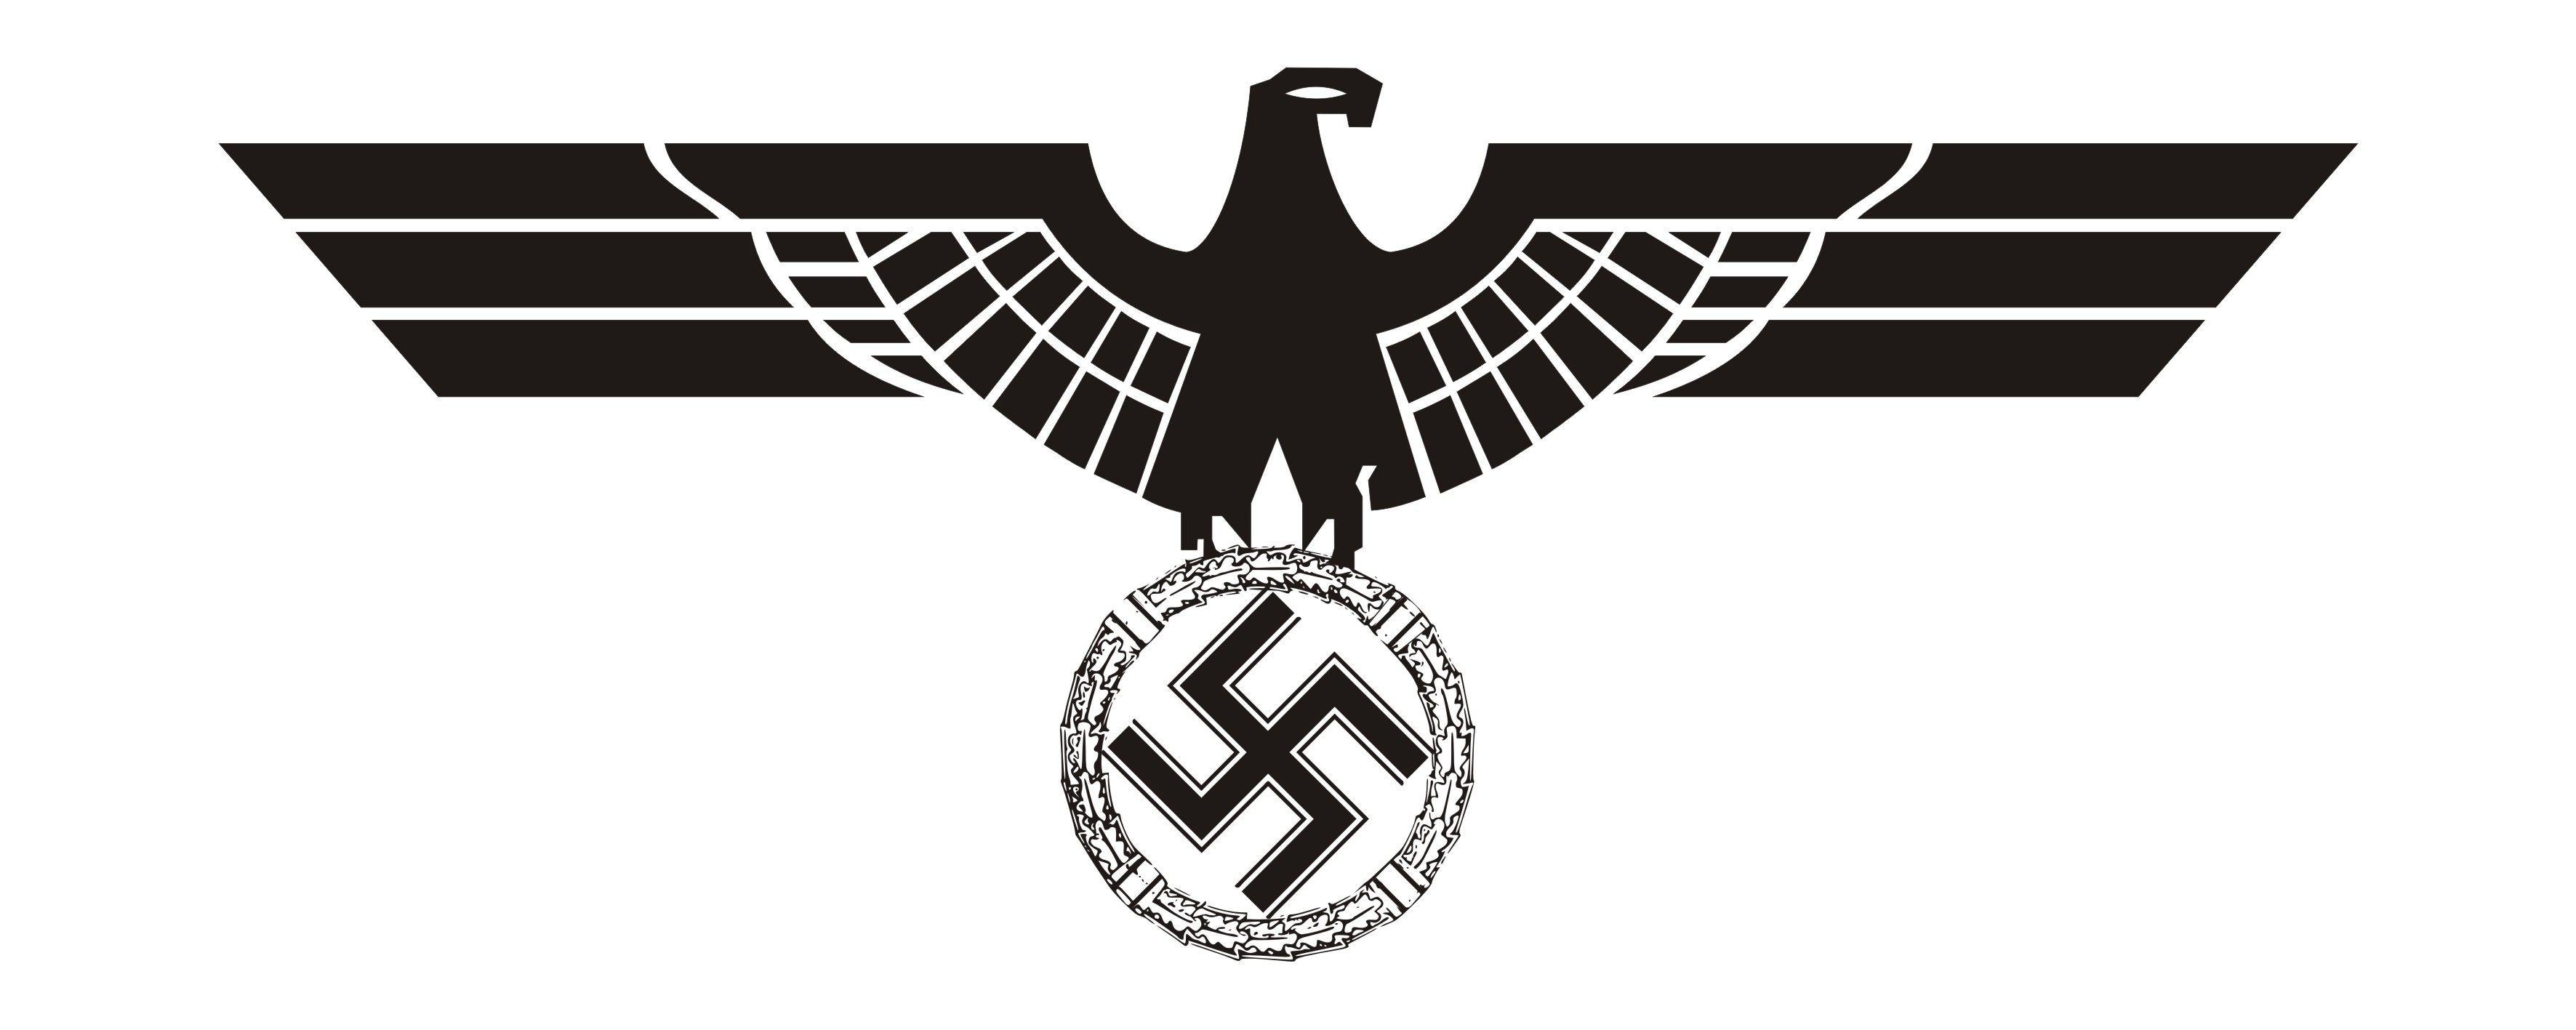 Hitler Logo - File:Logo Hitler.jpg - Wikimedia Commons